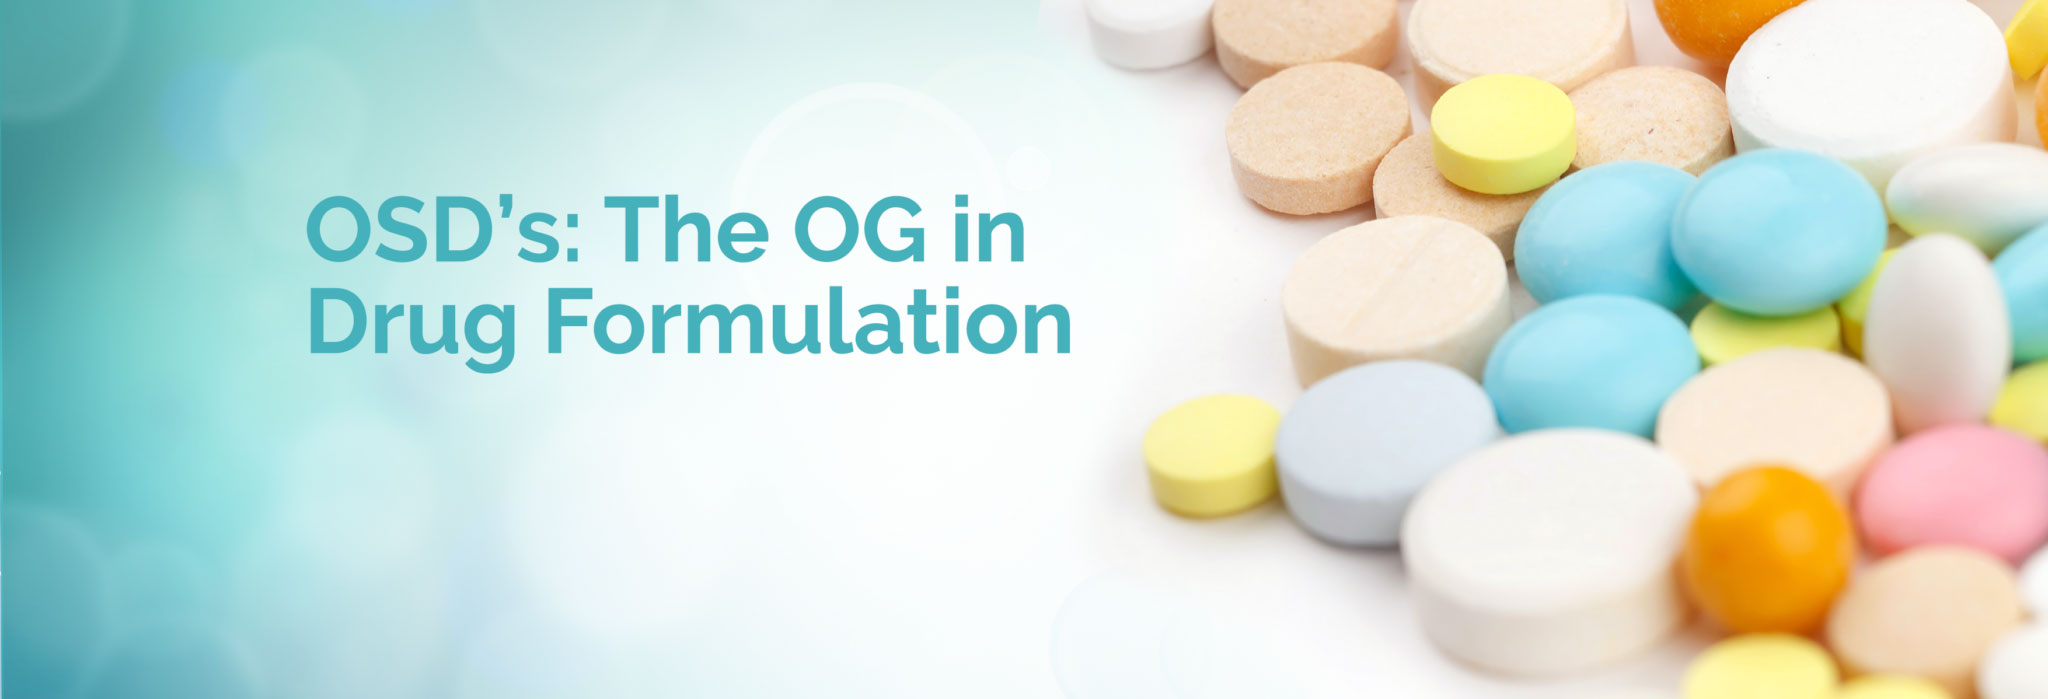 OSDs The OG in Drug Formulation